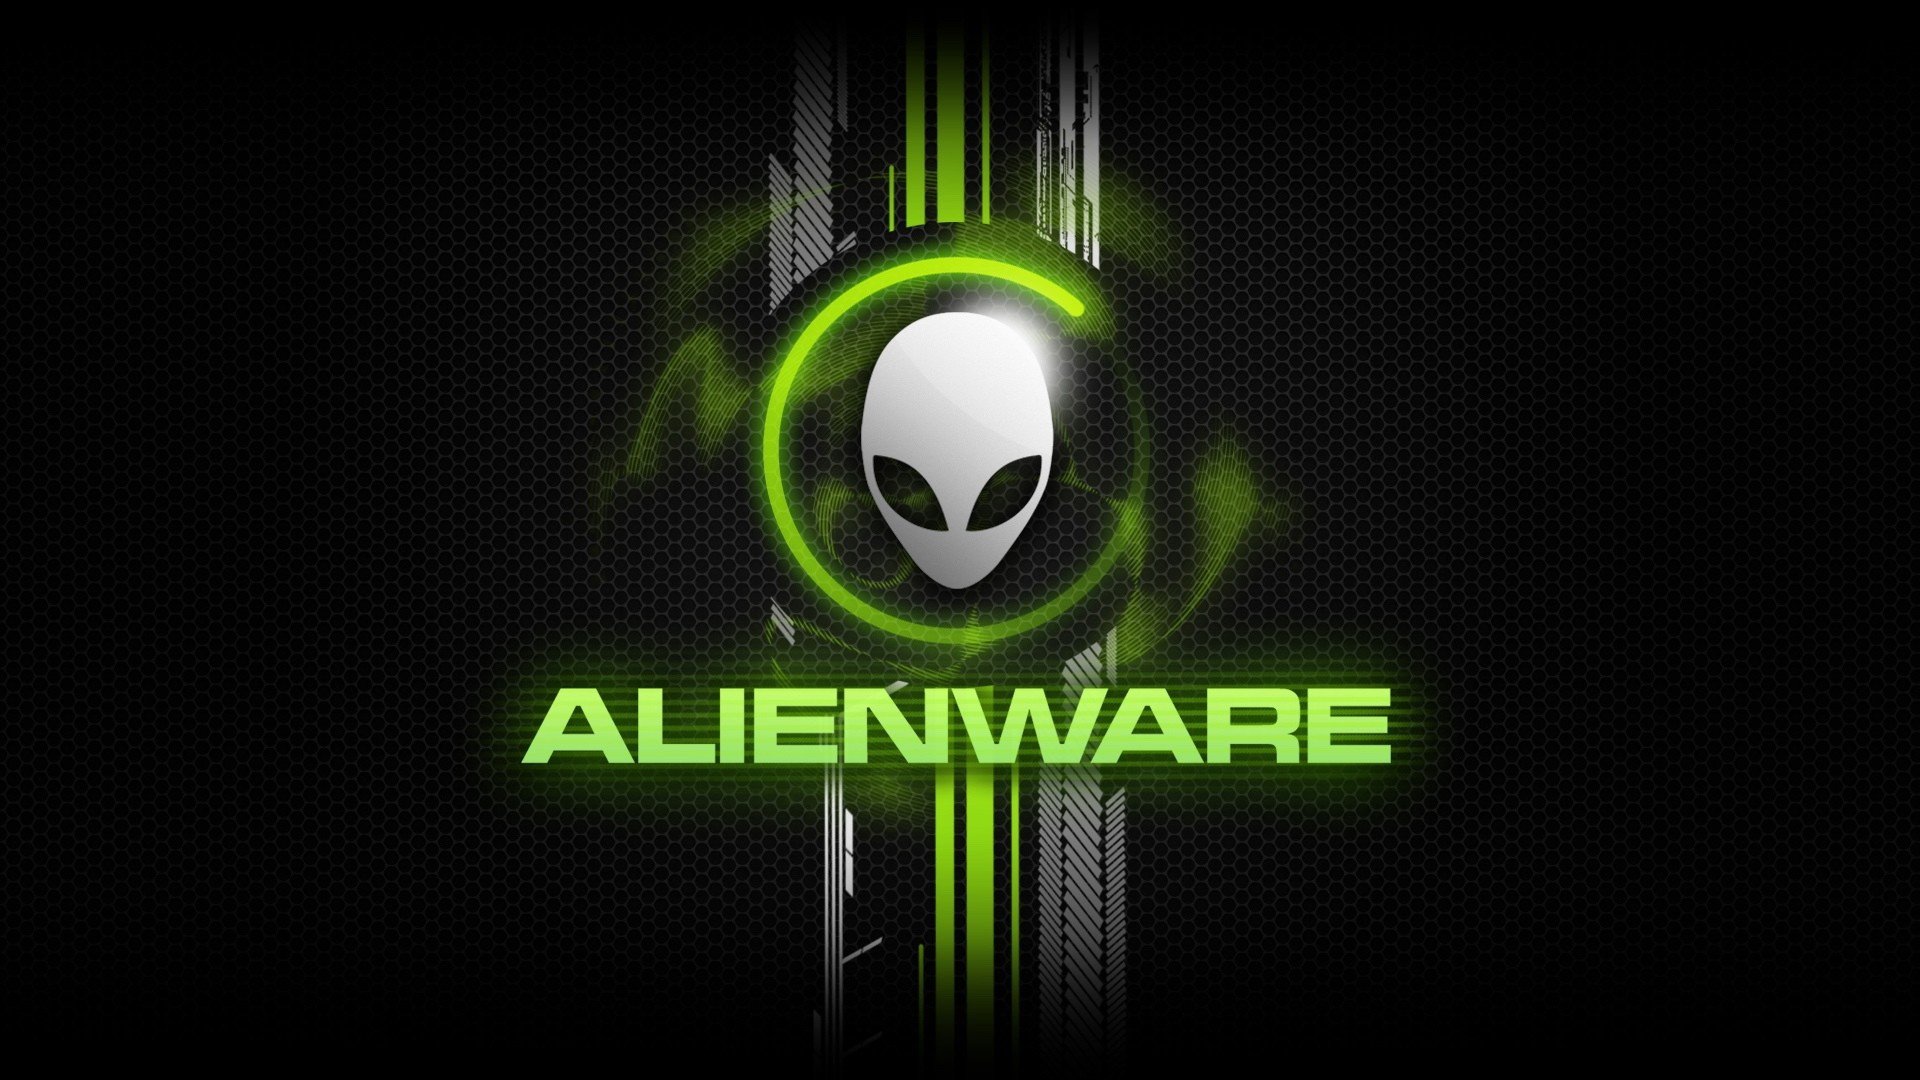 HD Alienware Wallpapers 19201080 Alienware Backgrounds for Laptops